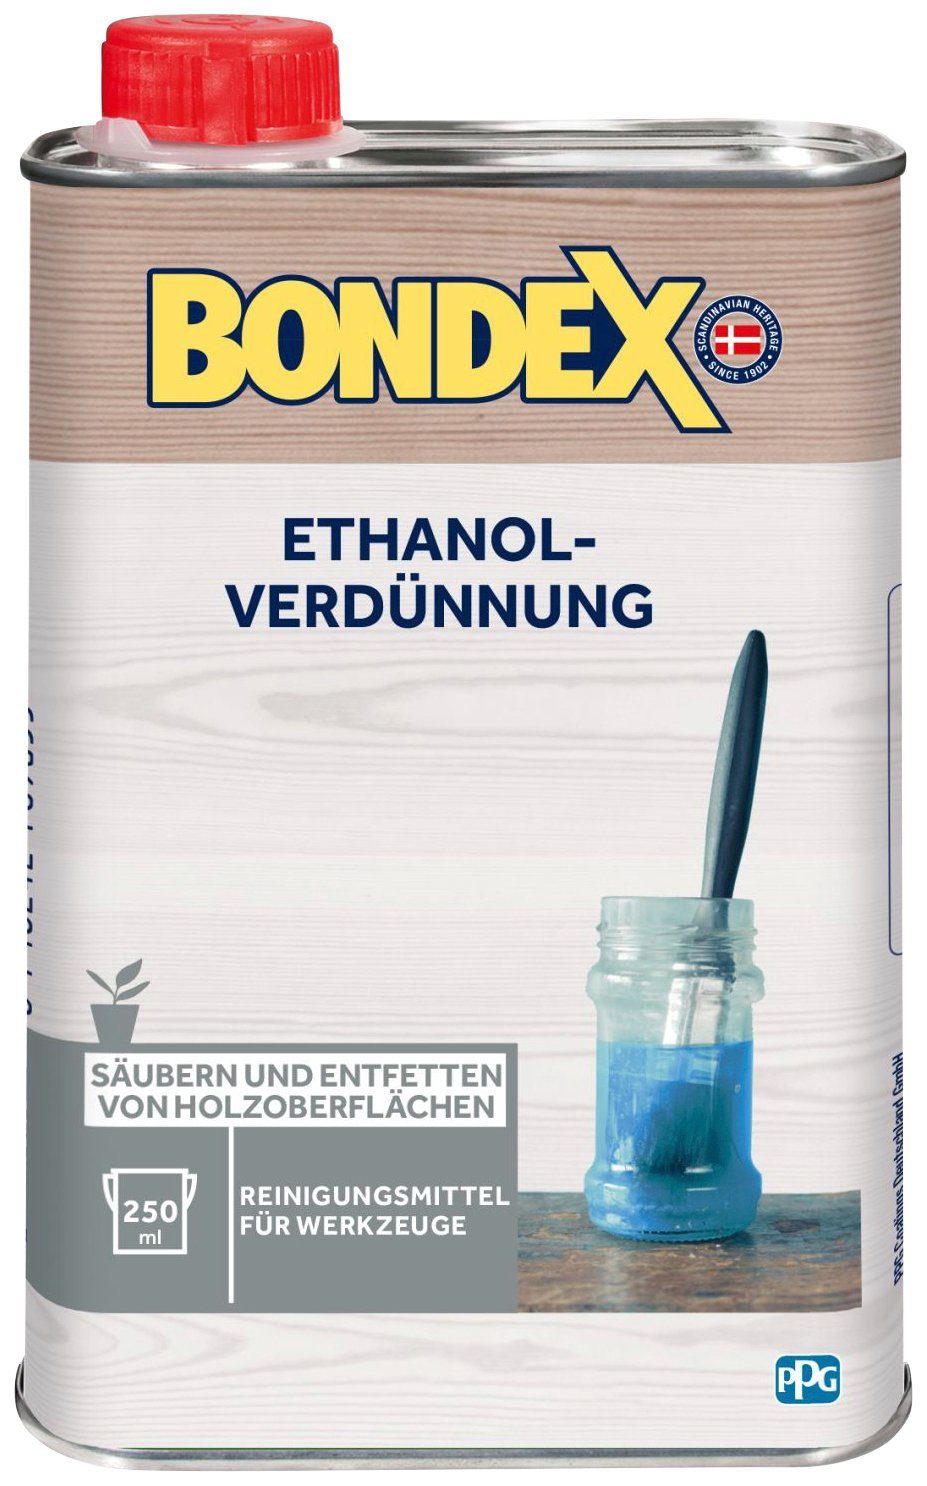 Bondex Terpentinersatz ETHANOL-VERDÜNNUNG, l 0,25